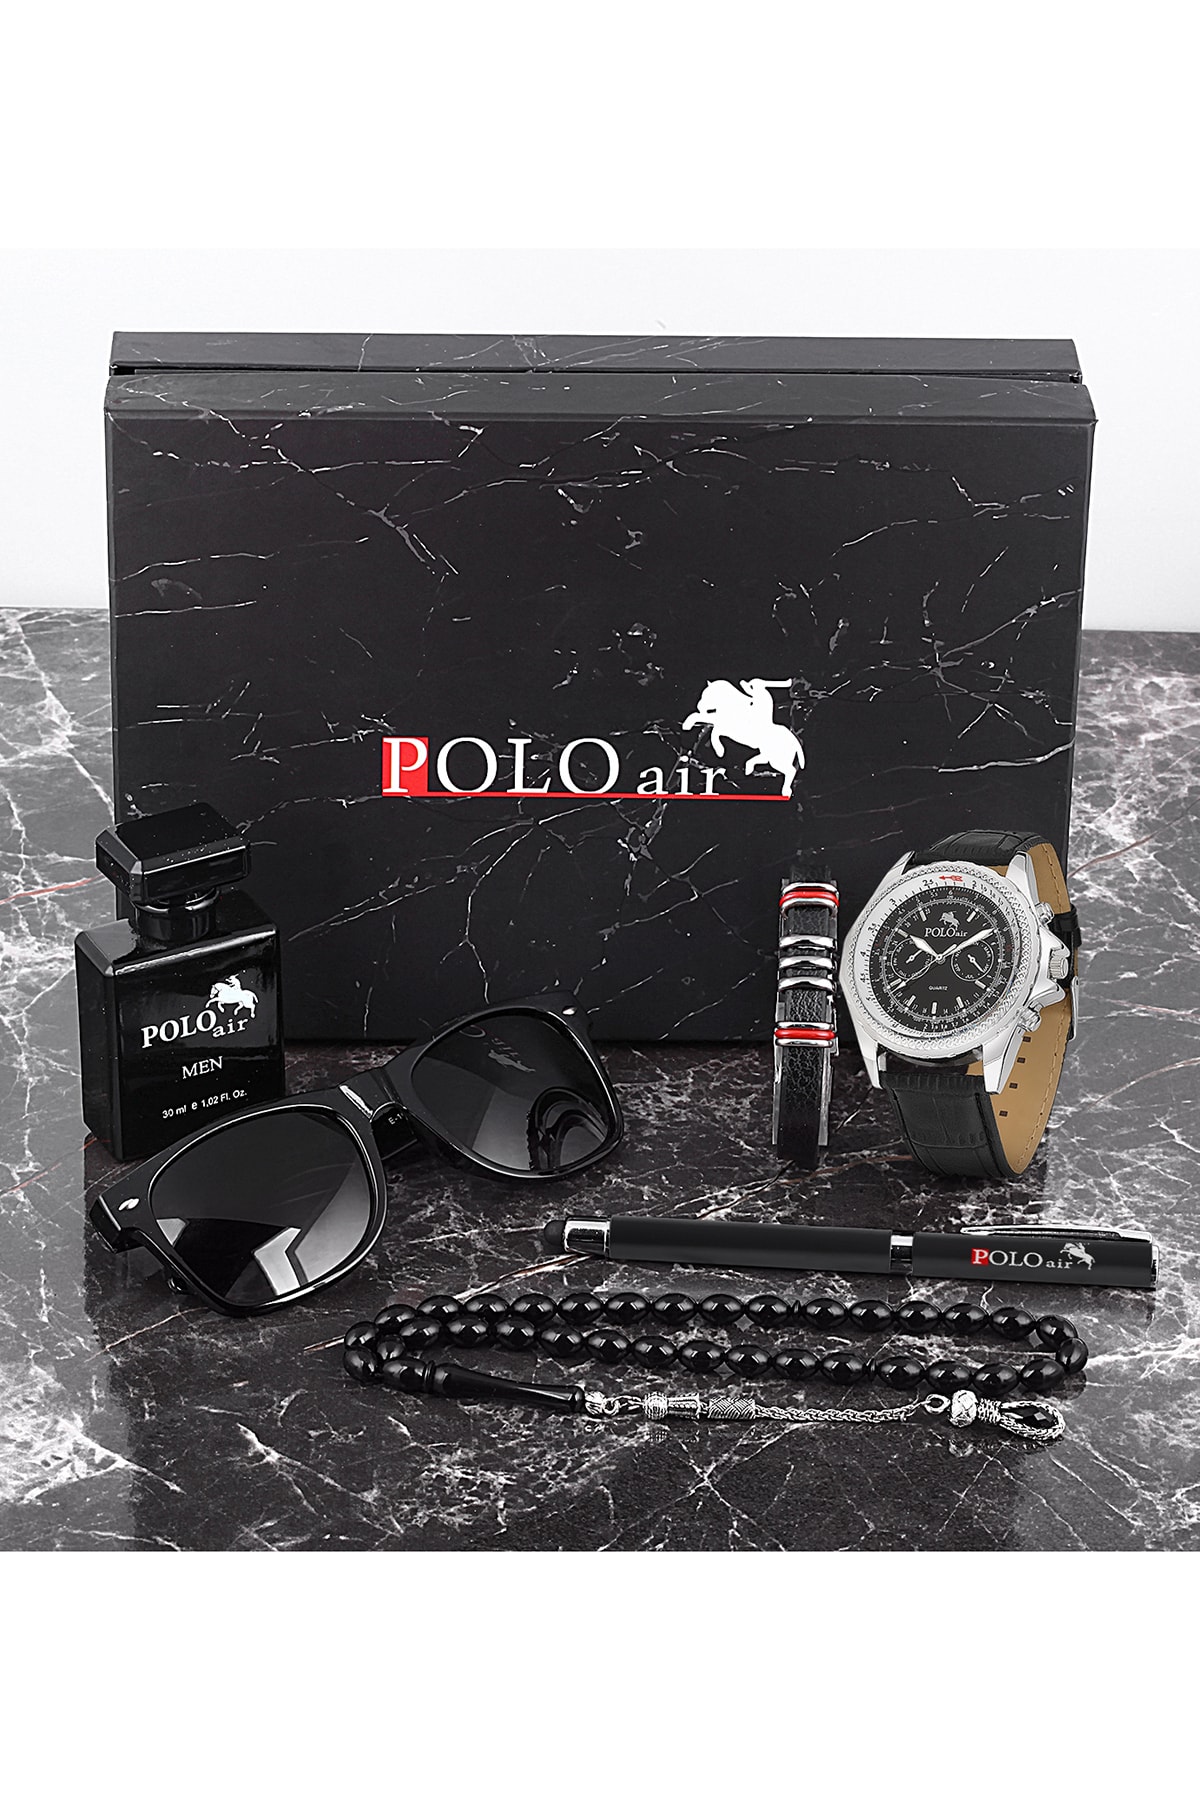 Polo Air Erkek Set Kombin Saat Gözlük Parfüm Tesbih Kalem Bileklik Özel Kutulu Pl-0625e